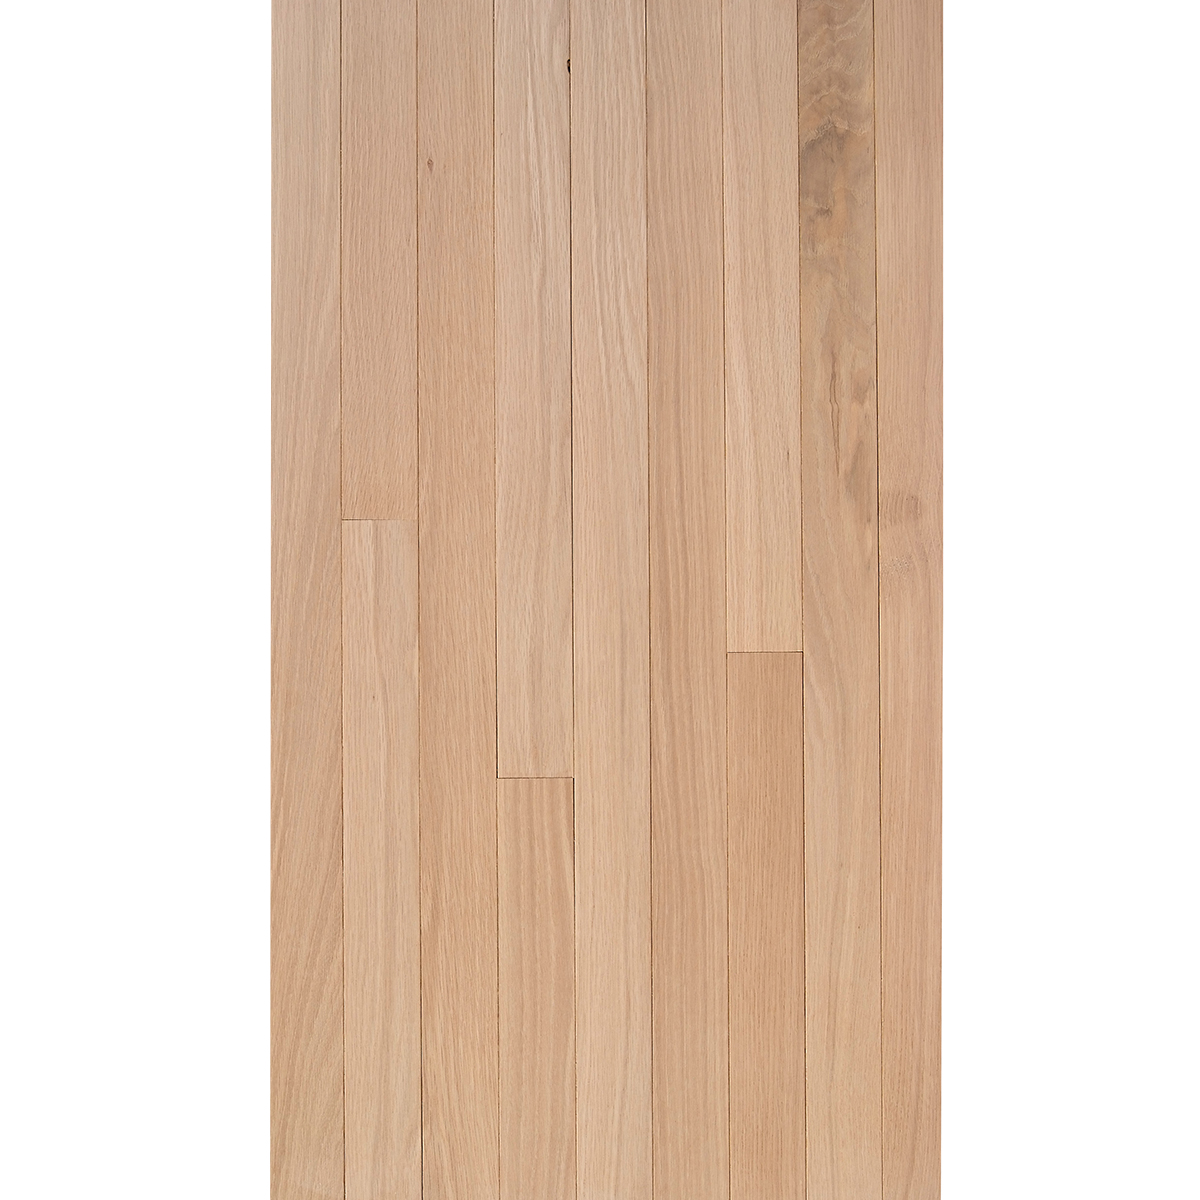 White Oak 3 4 X 2 1 Select Grade, 3 4 In Unfinished Oak Hardwood Flooring